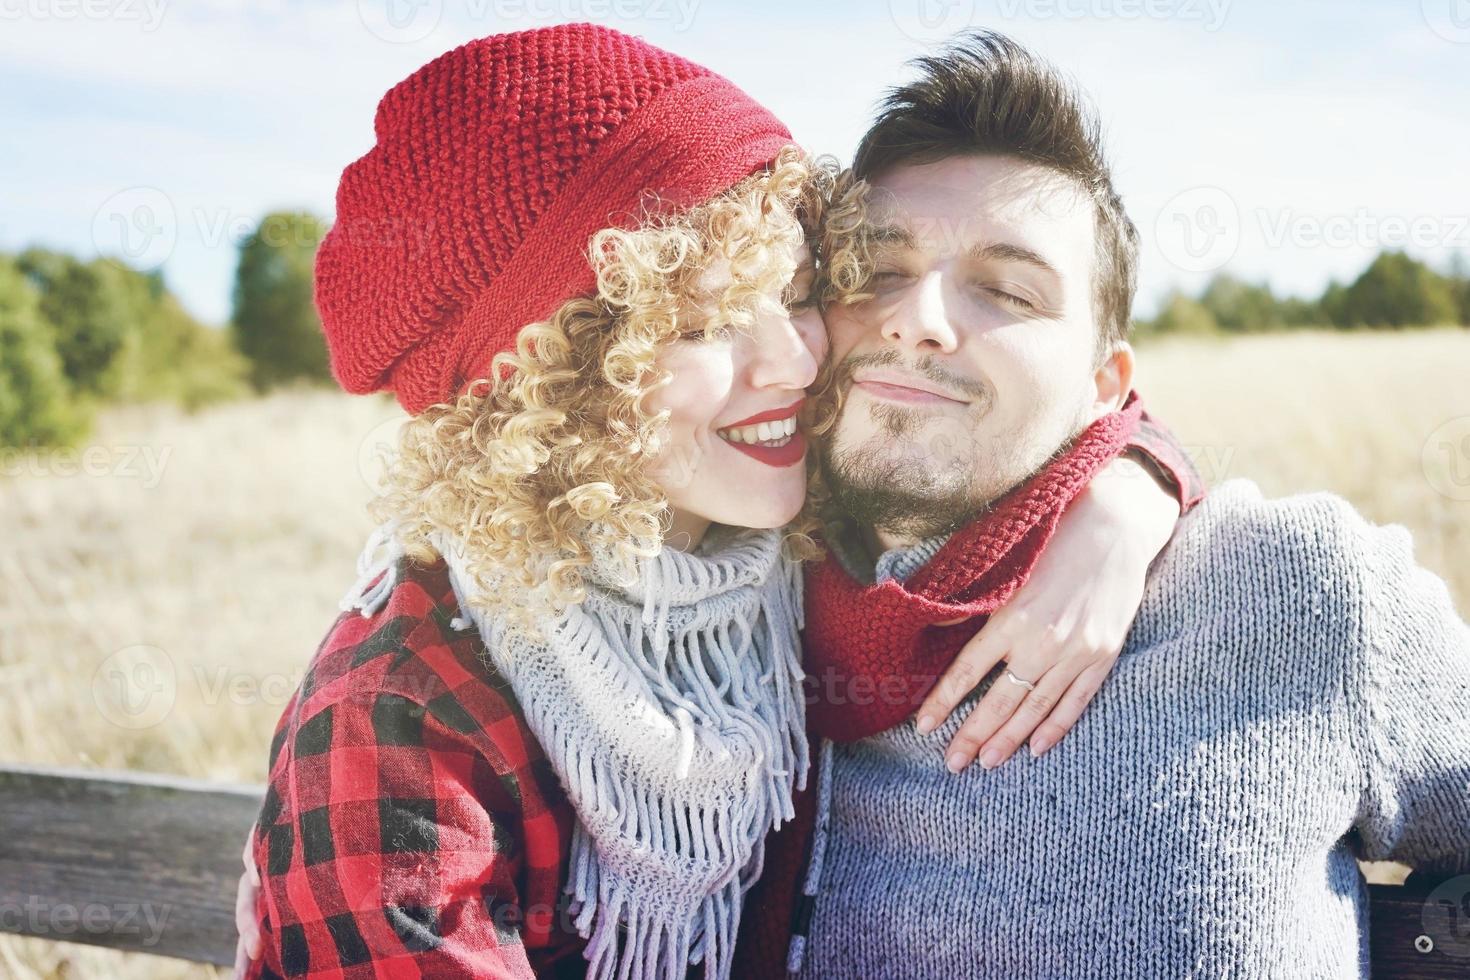 jovem casal romântico de uma linda mulher loira com cabelo encaracolado e usando um boné de lã vermelha, abraços para o namorado e um homem bonito ao ar livre foto